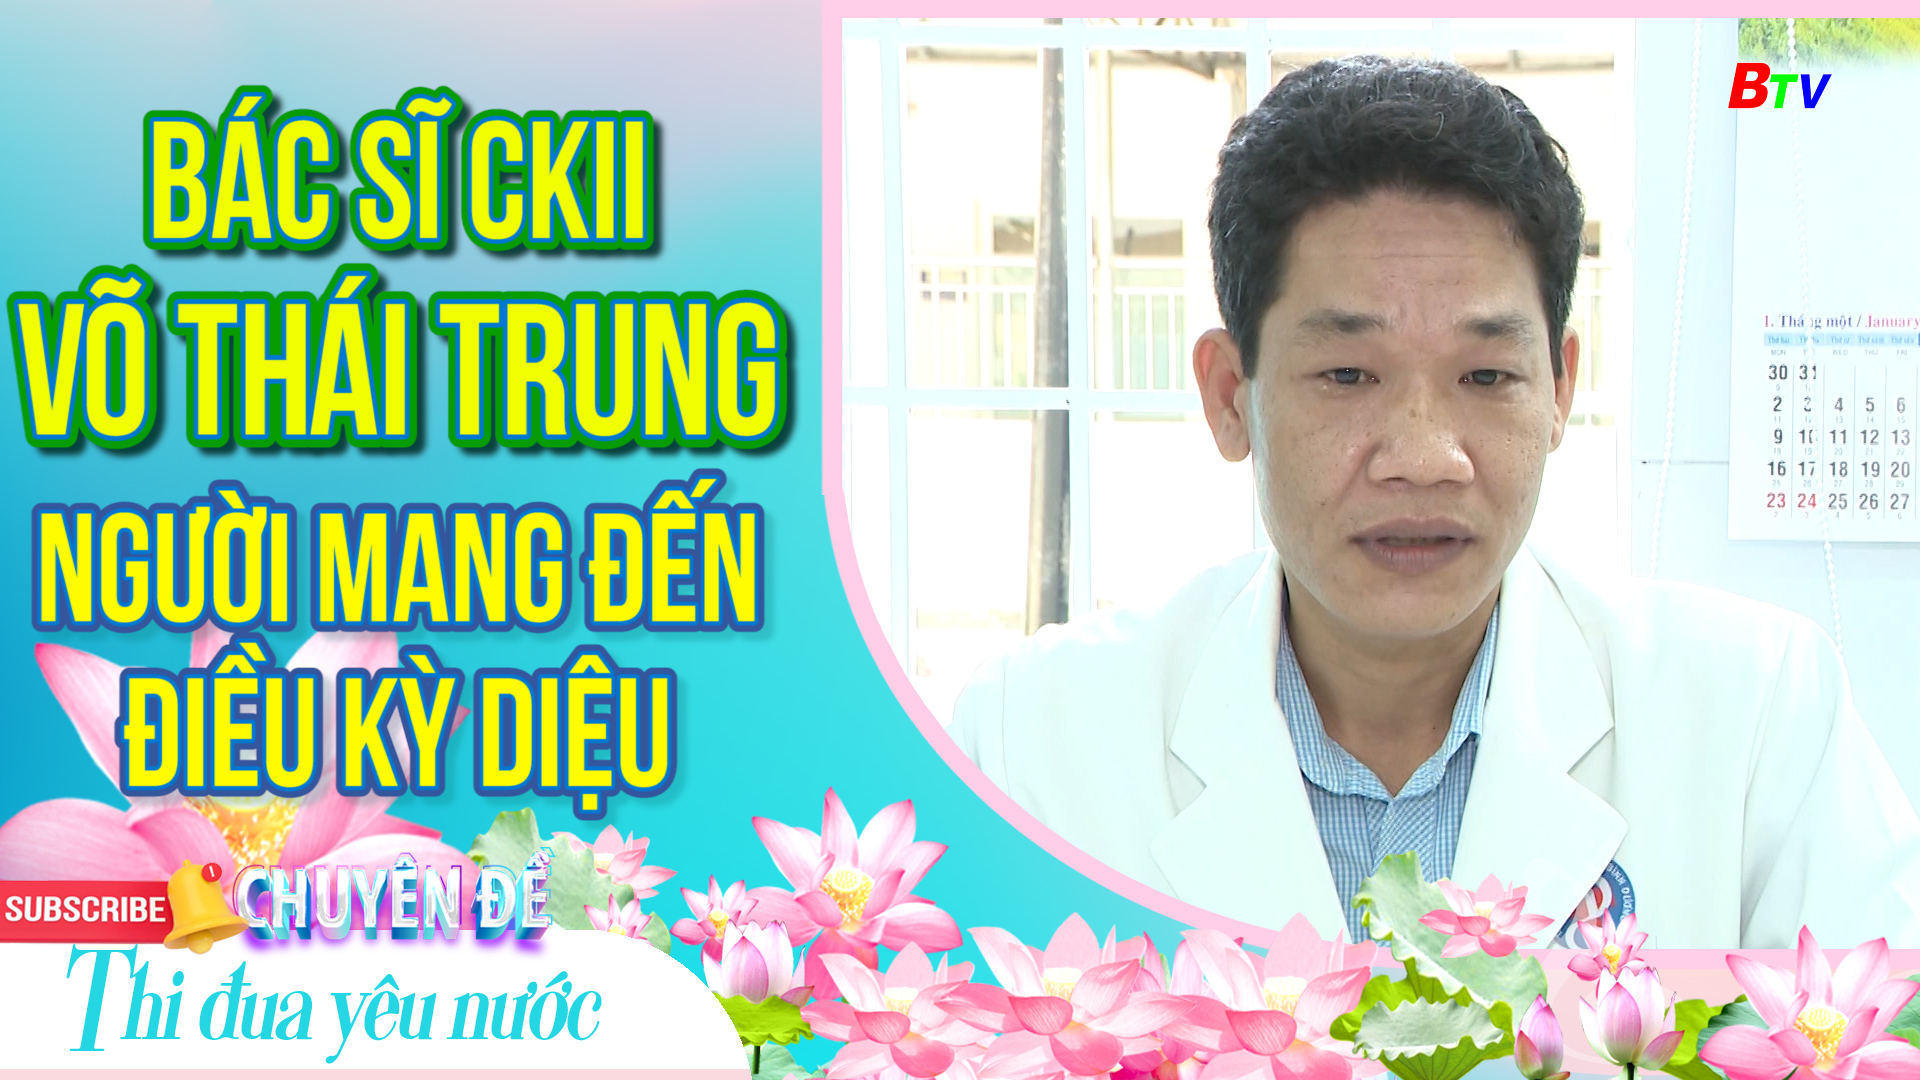 Bác sĩ CKII Võ Thái Trung - Người mang đến điều kỳ diệu